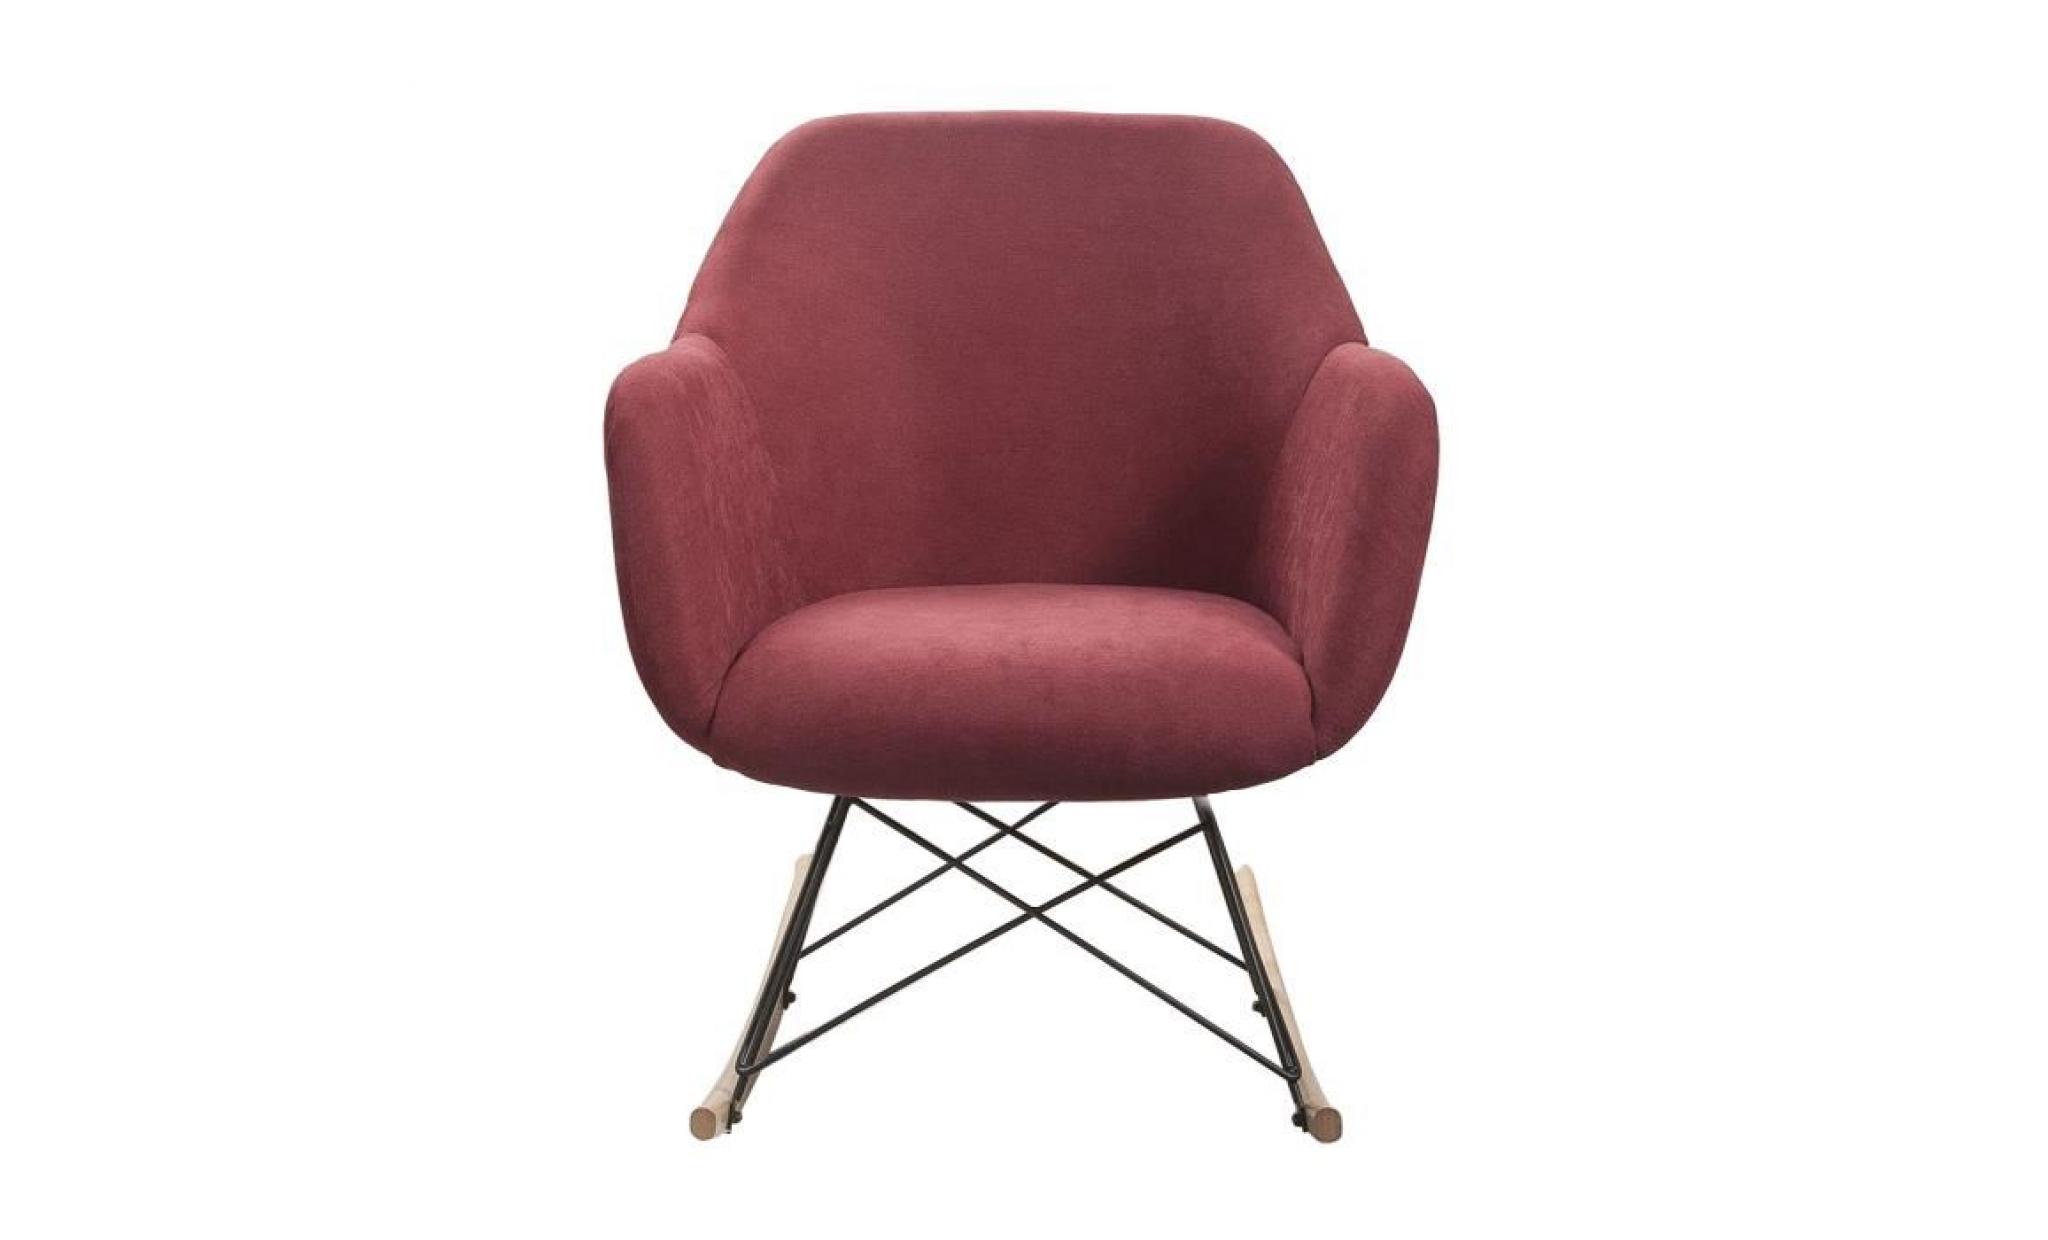 mensh fauteuil à bascule rocking chair   tissu lie de vin   pieds bois massif   scandinave   l 67 x p 75 cm pas cher